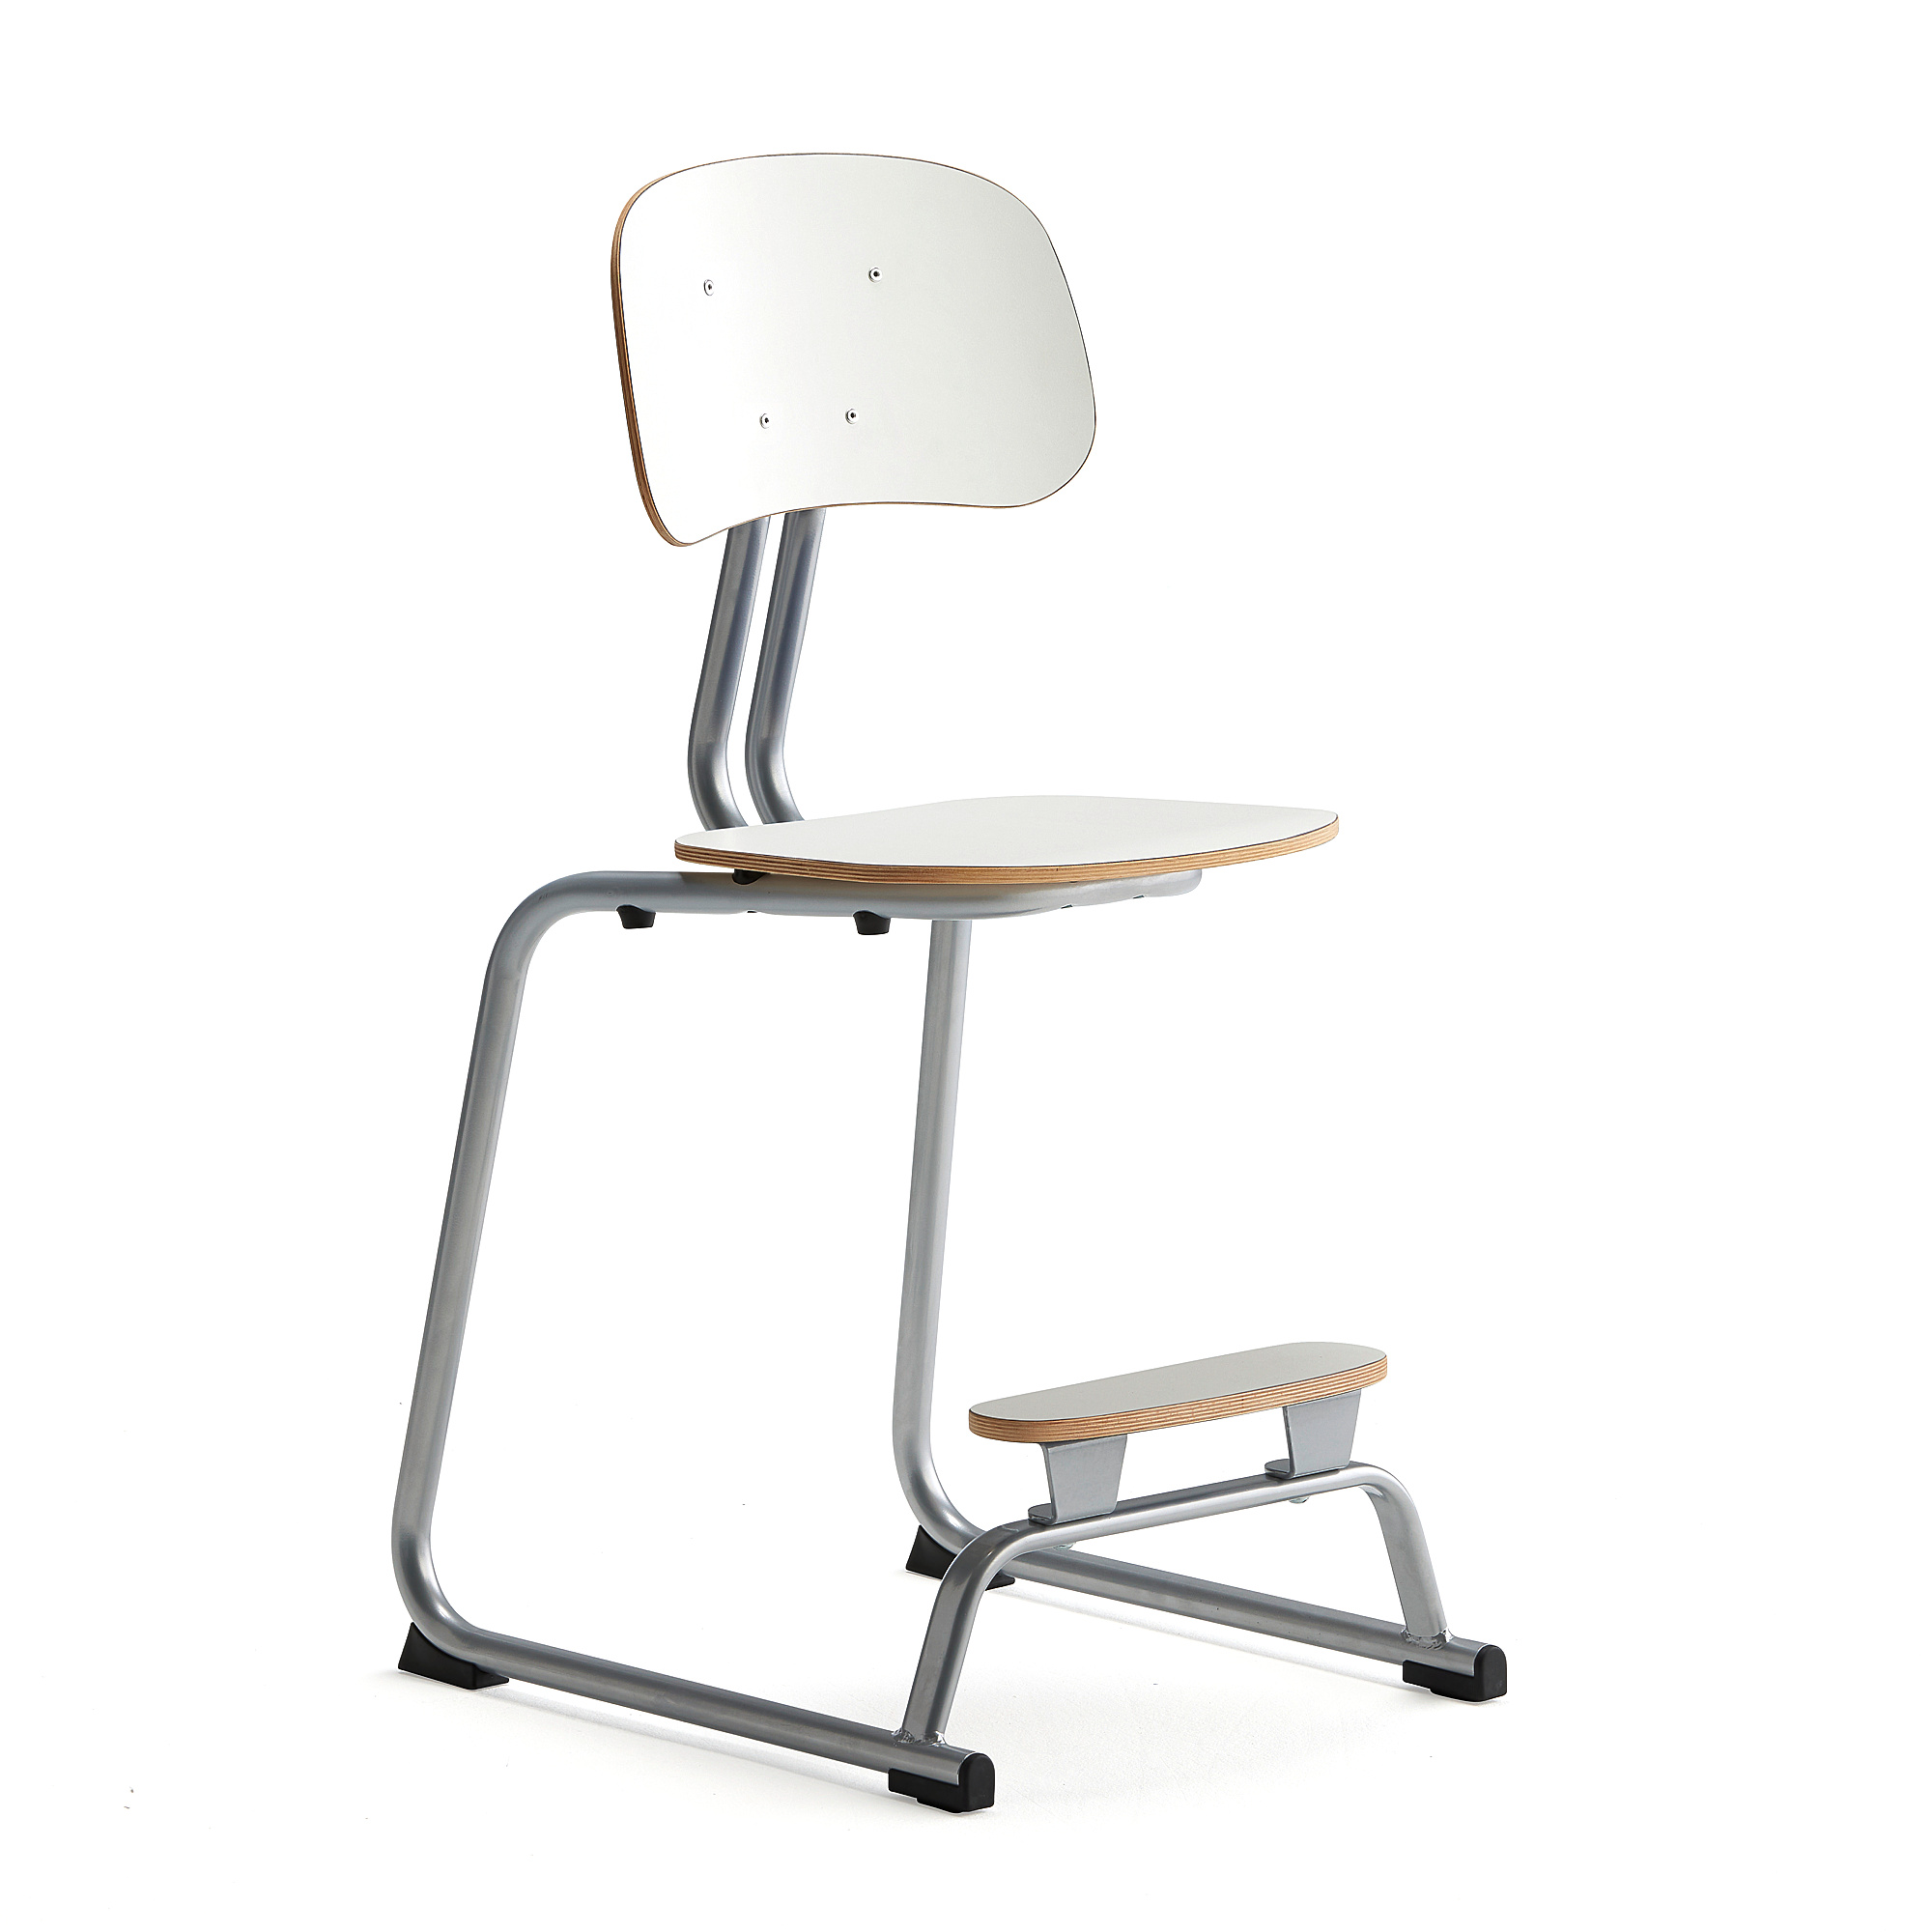 Školní židle YNGVE, ližinová podnož, výška 520 mm, stříbrná/bílá